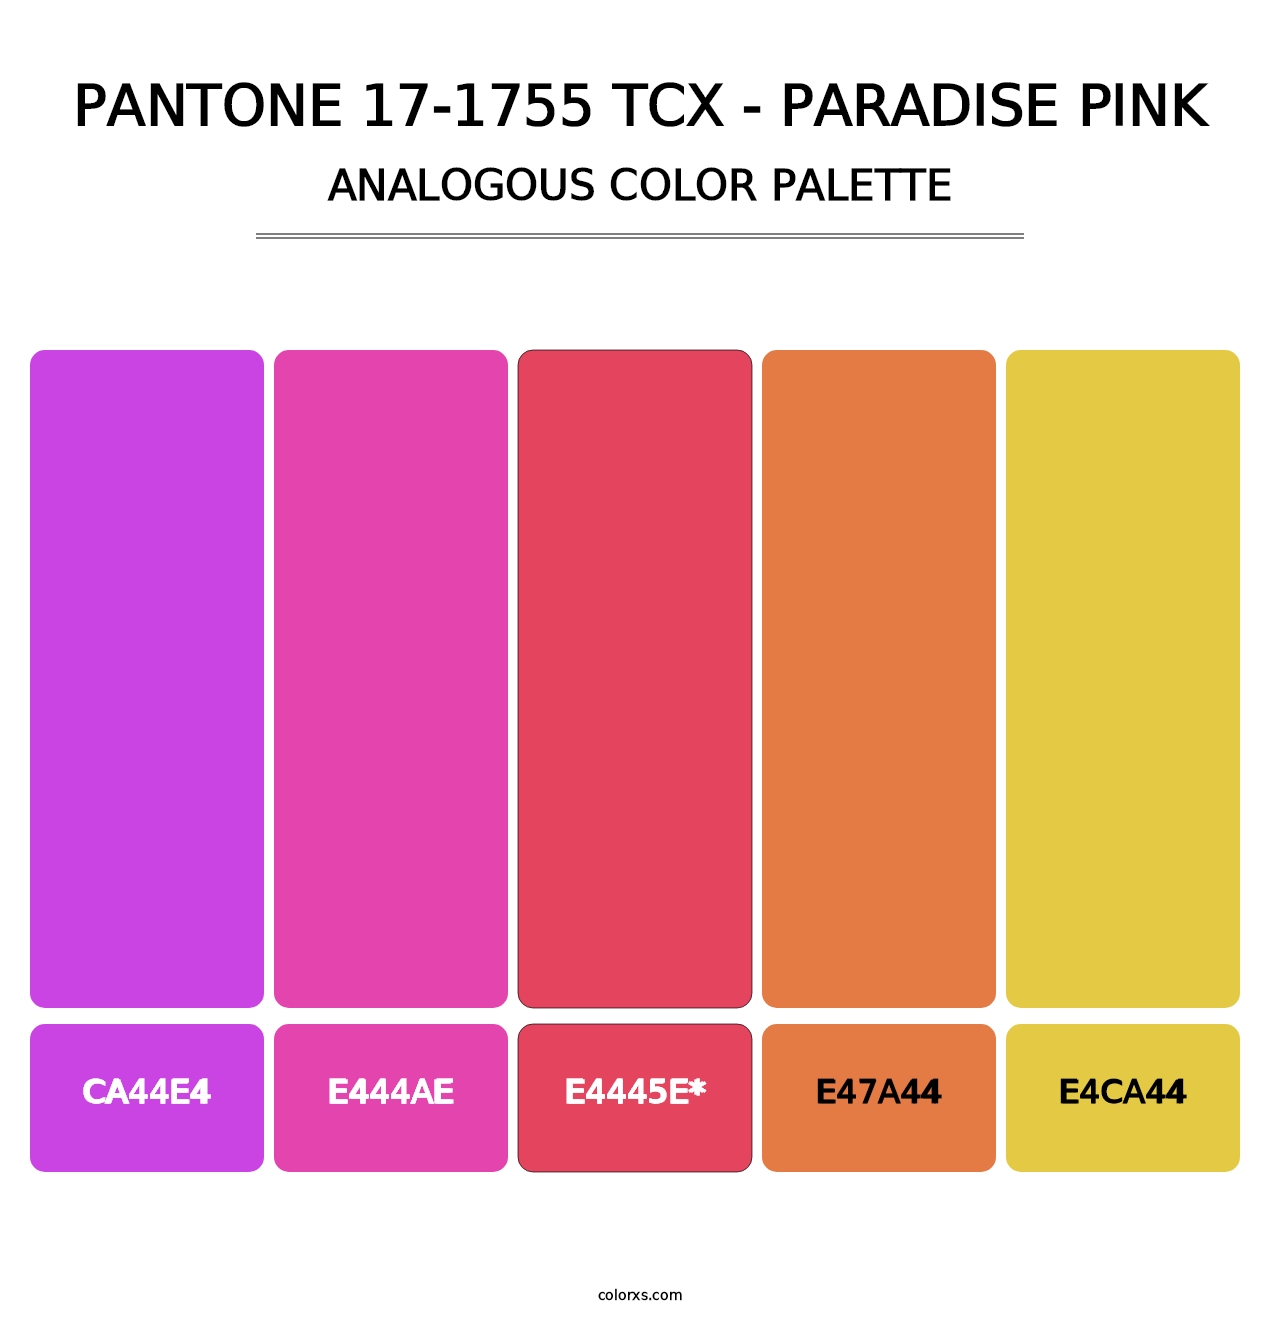 PANTONE 17-1755 TCX - Paradise Pink - Analogous Color Palette